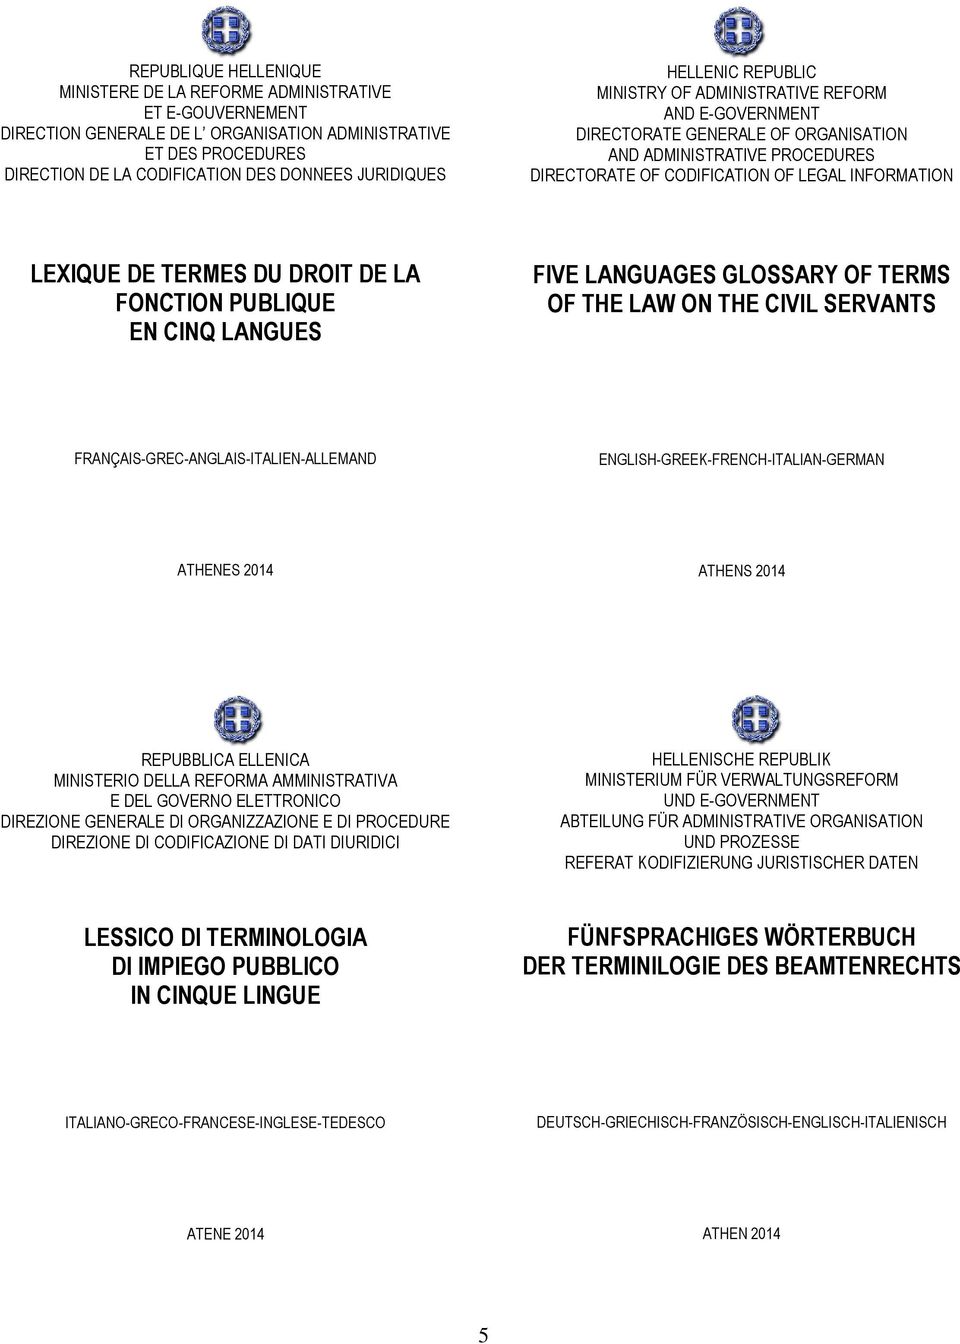 INFORMATION LEXIQUE DE TERMES DU DROIT DE LA FONCTION PUBLIQUE EN CINQ LANGUES FIVE LANGUAGES GLOSSARY OF TERMS OF THE LAW ON THE CIVIL SERVANTS FRANÇAIS-GREC-ANGLAIS-ITALIEN-ALLEMAND